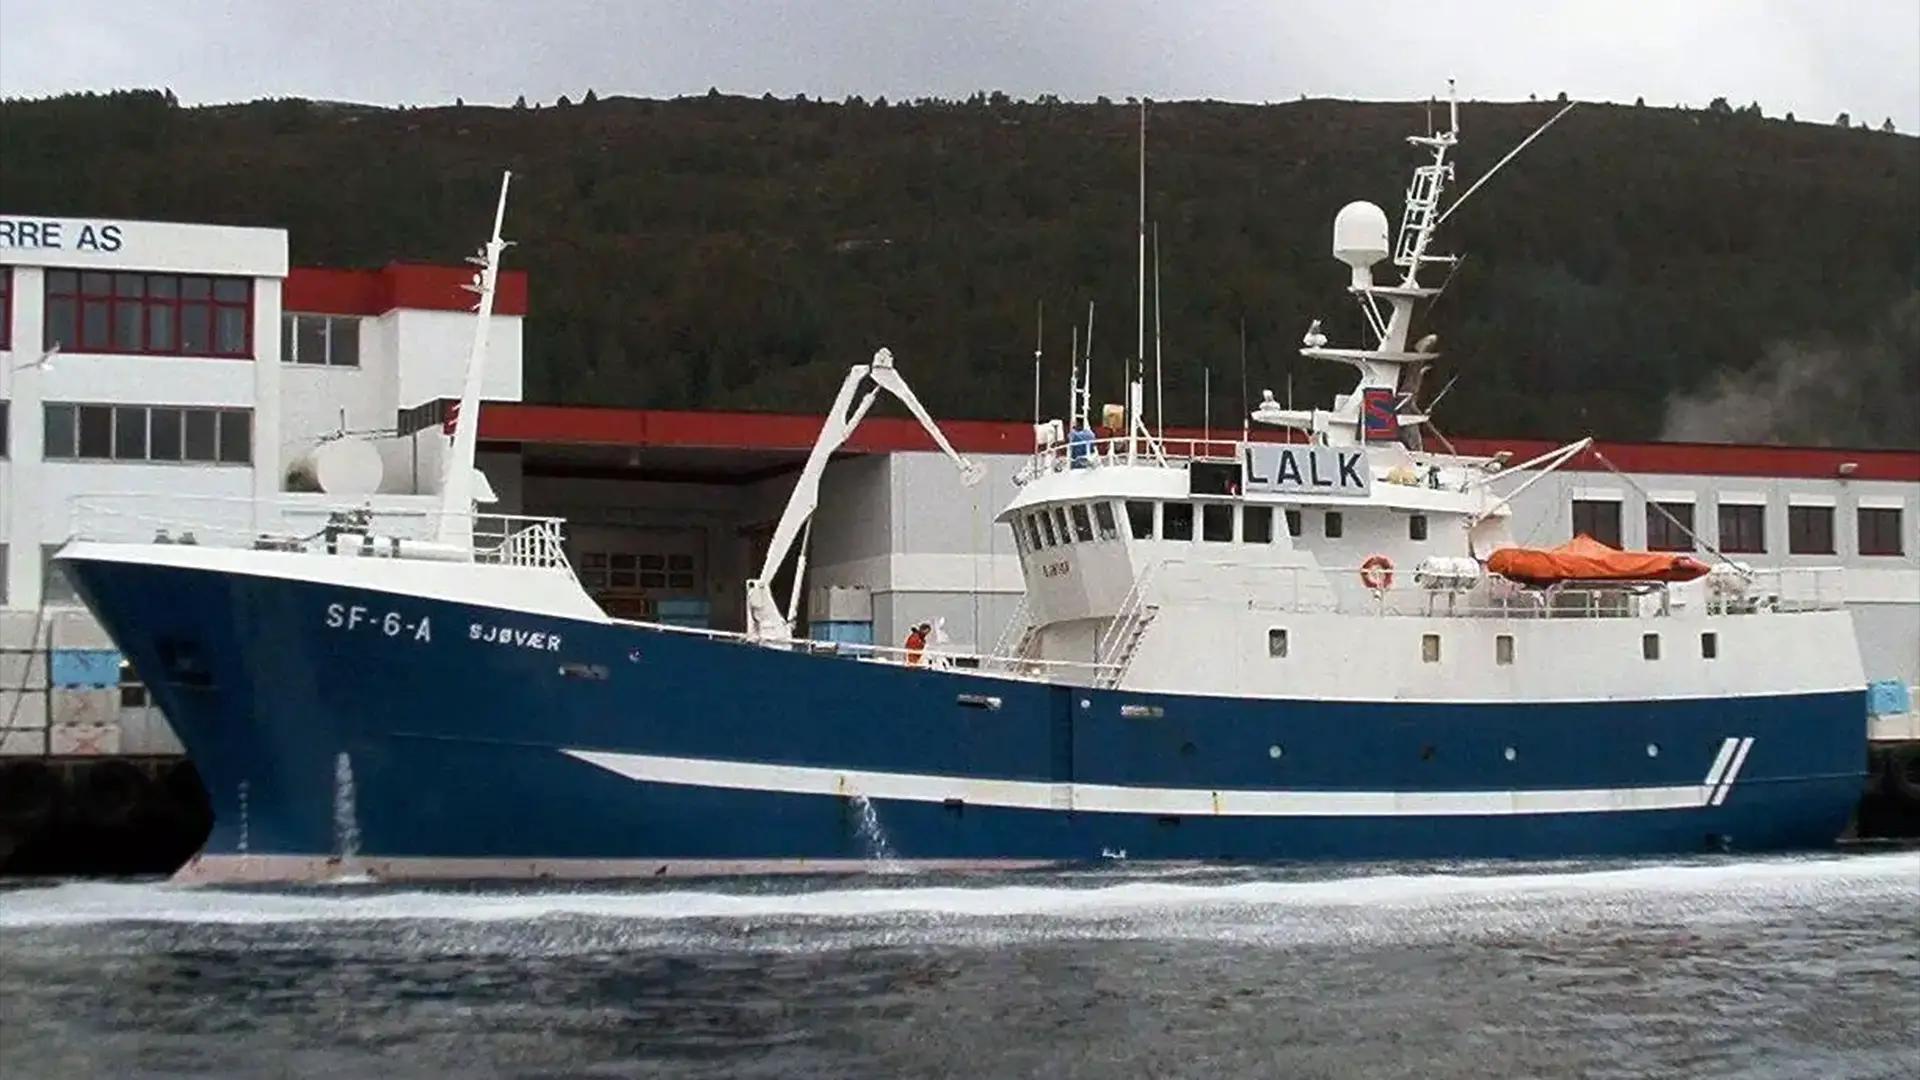 Le bateau de pêche sur lequel j’ai travaillé en Norvège